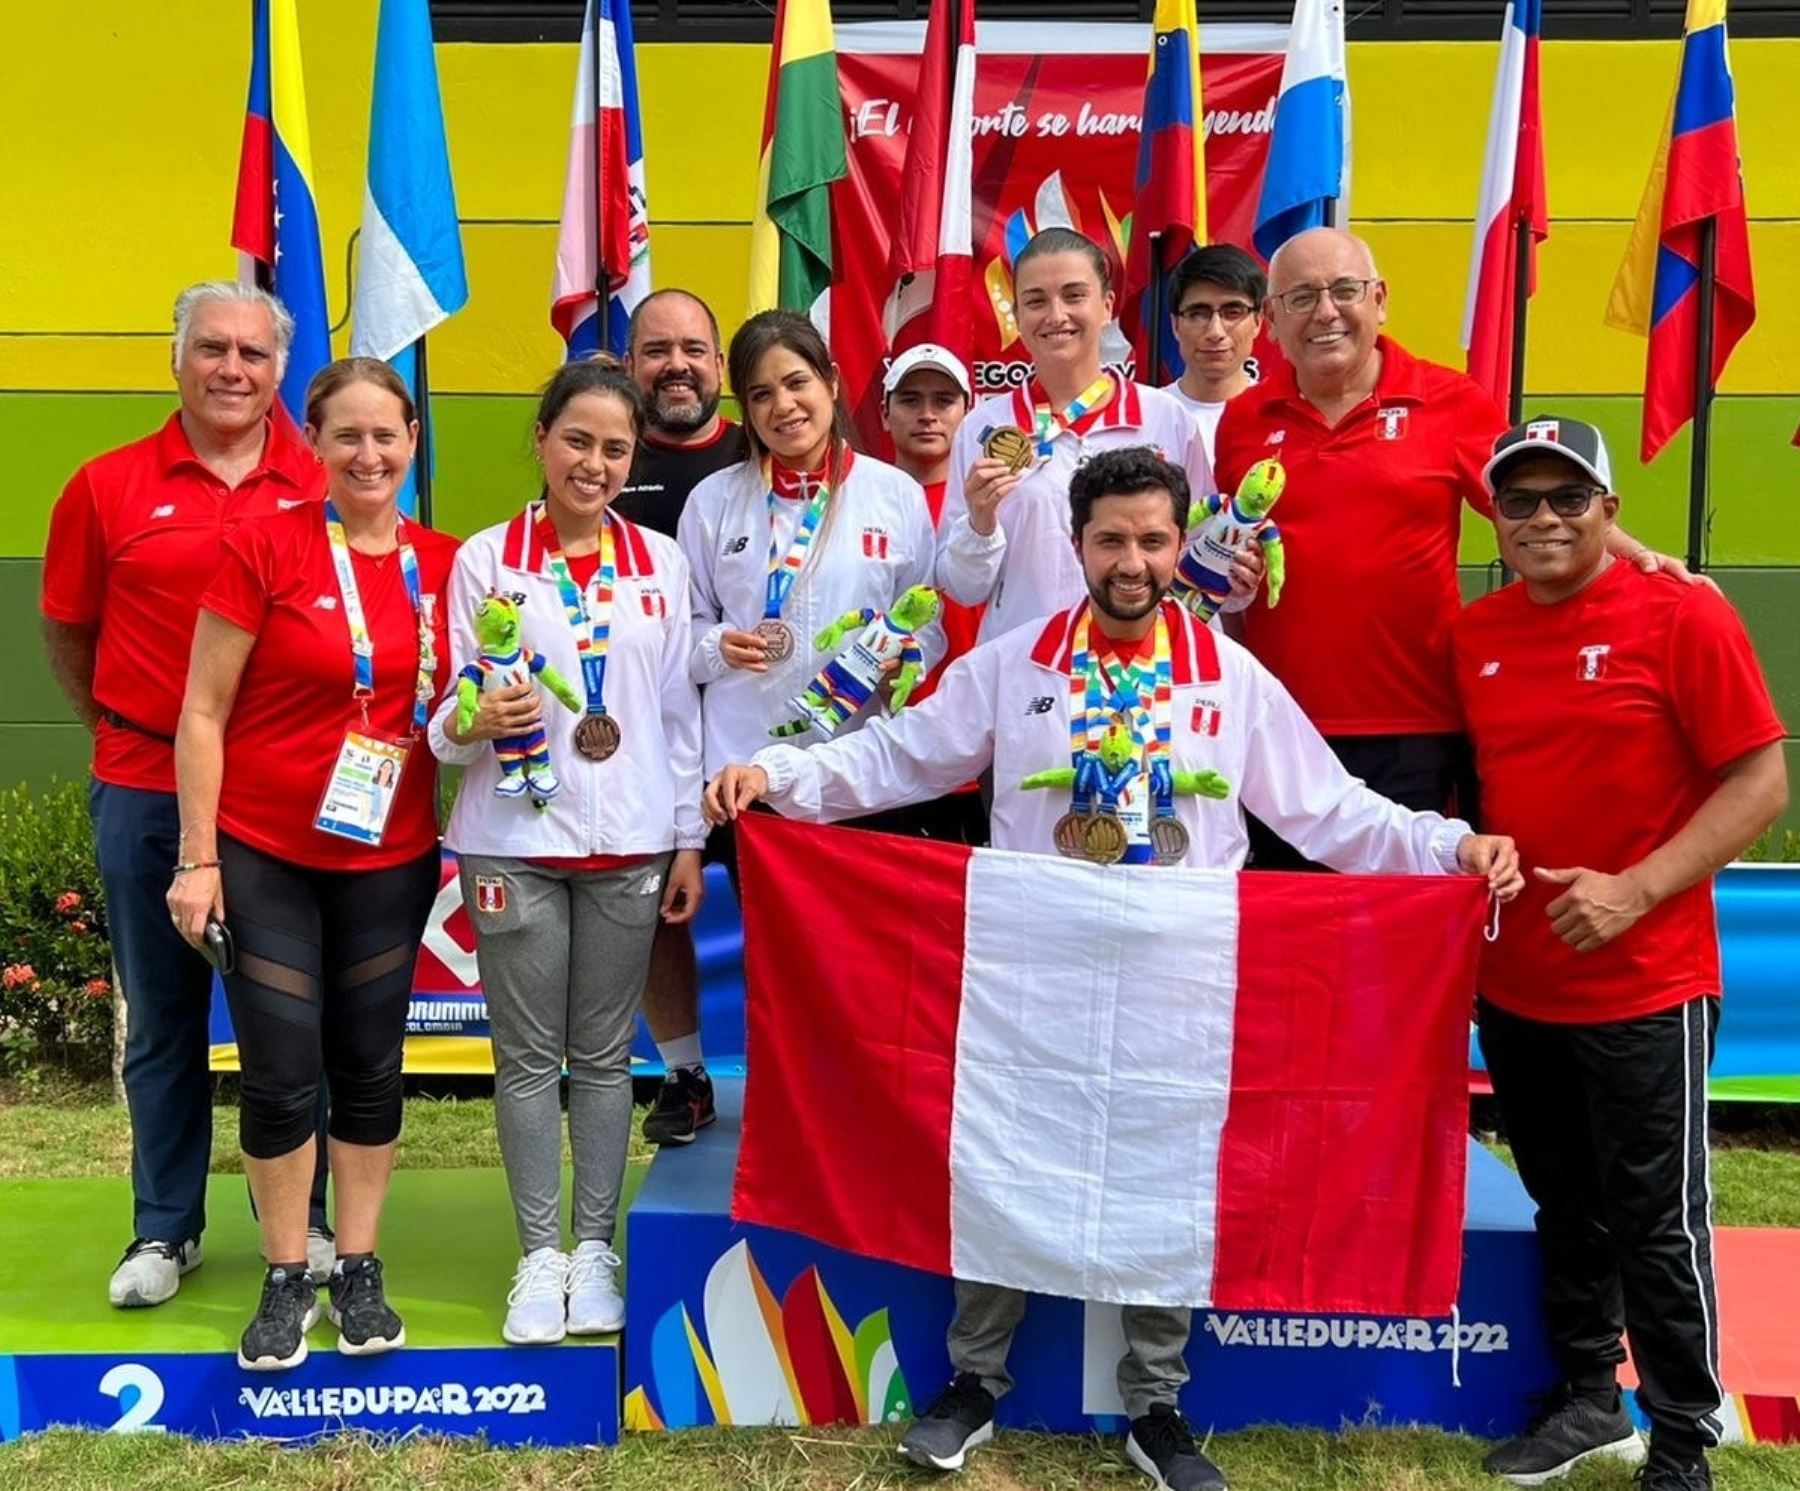 La delegación peruana mantiene su cosecha de medallas de los Juegos Bolivarianos Valledupar